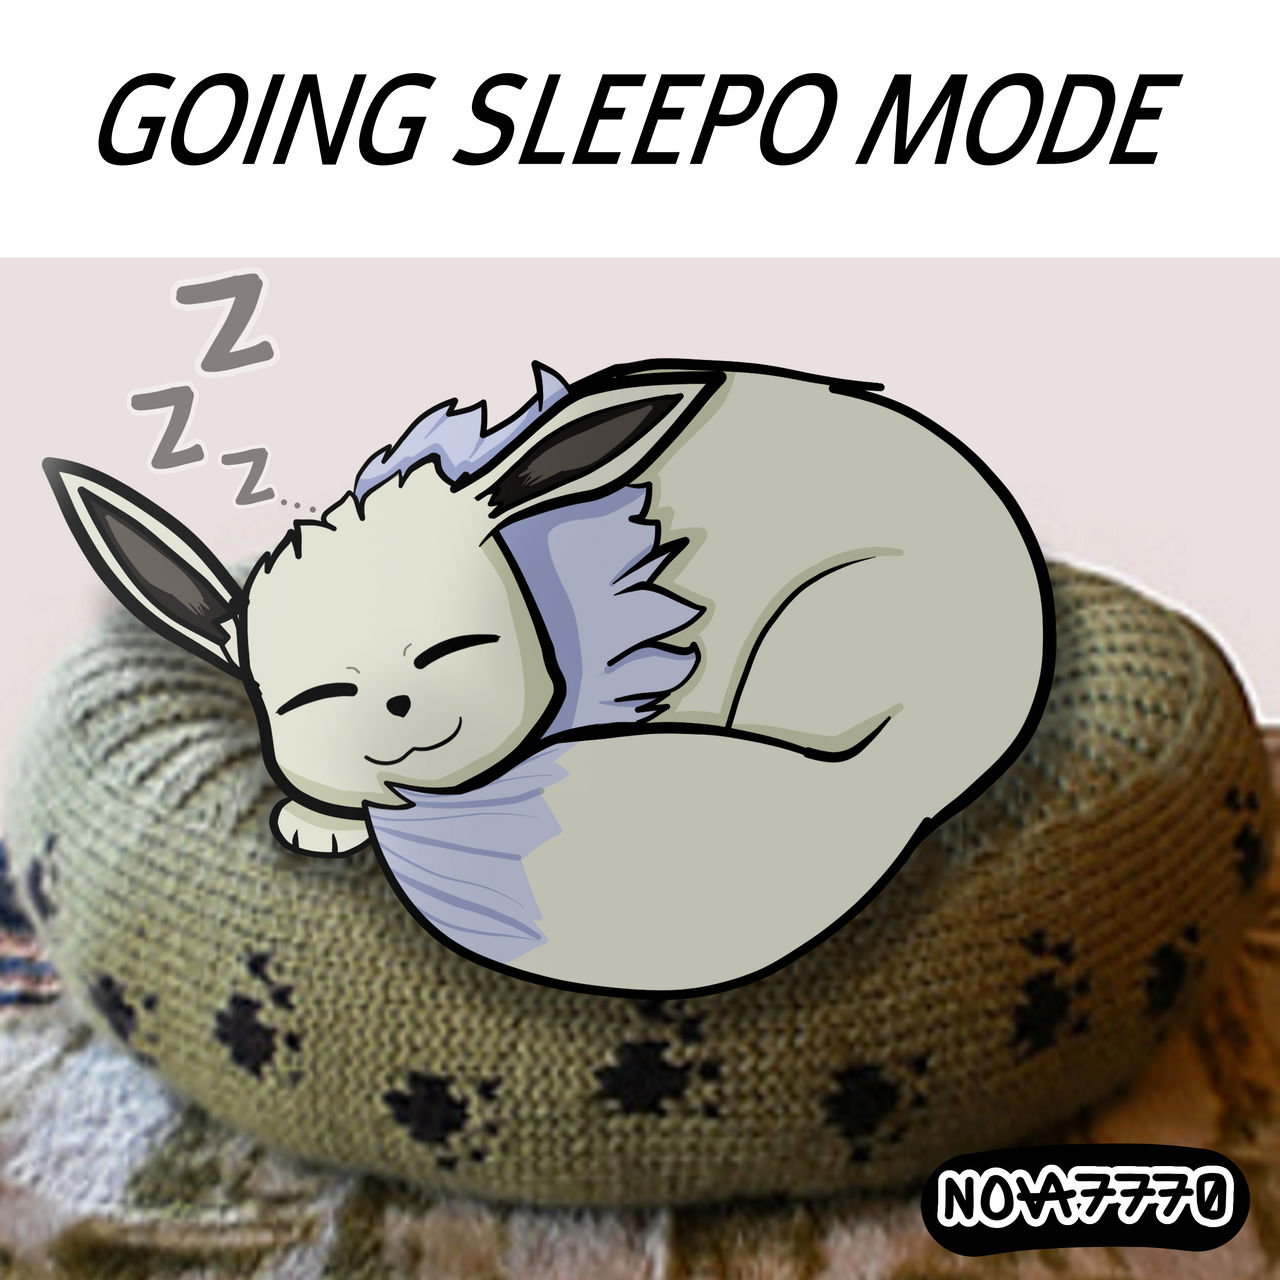 Capturando um Eevee Shiny no Pokémon Sleep - Pixel Café